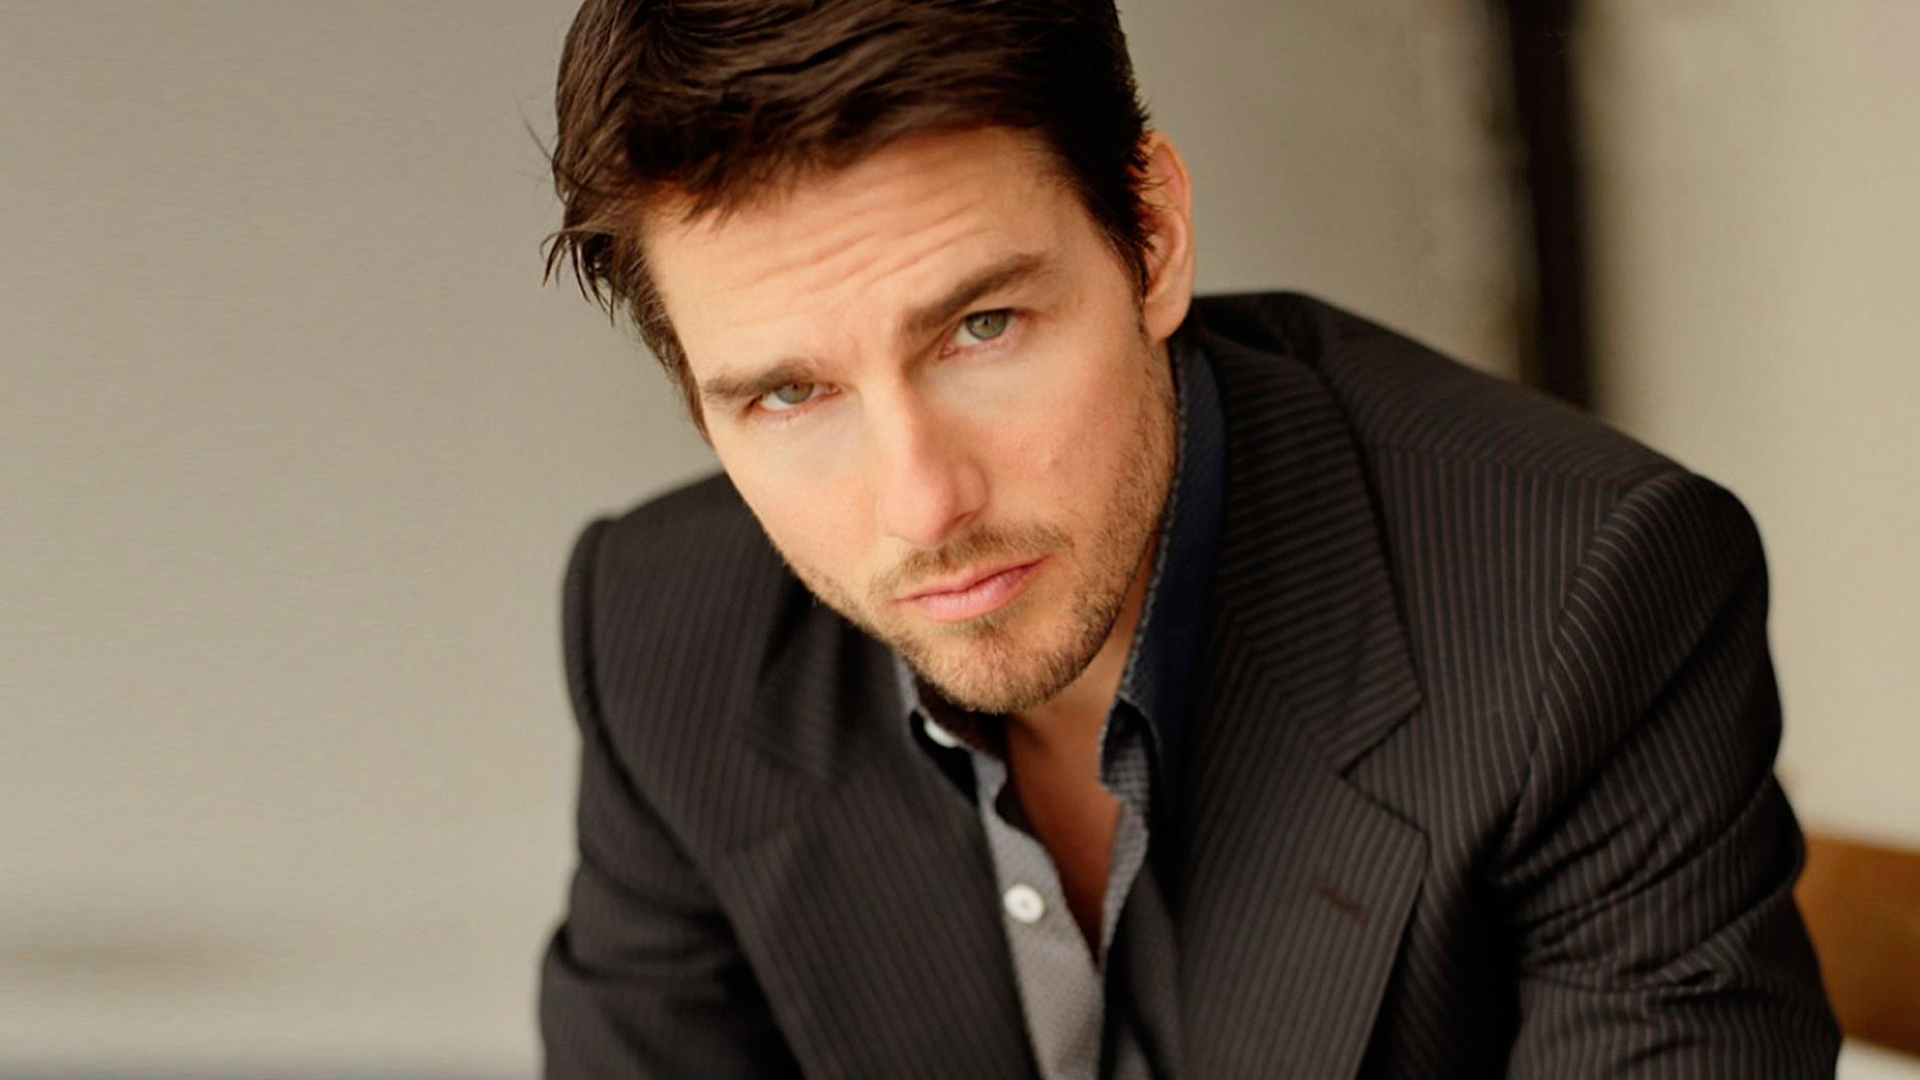 Tom Cruise et la scientologie : De nouvelles révélations inquiétantes